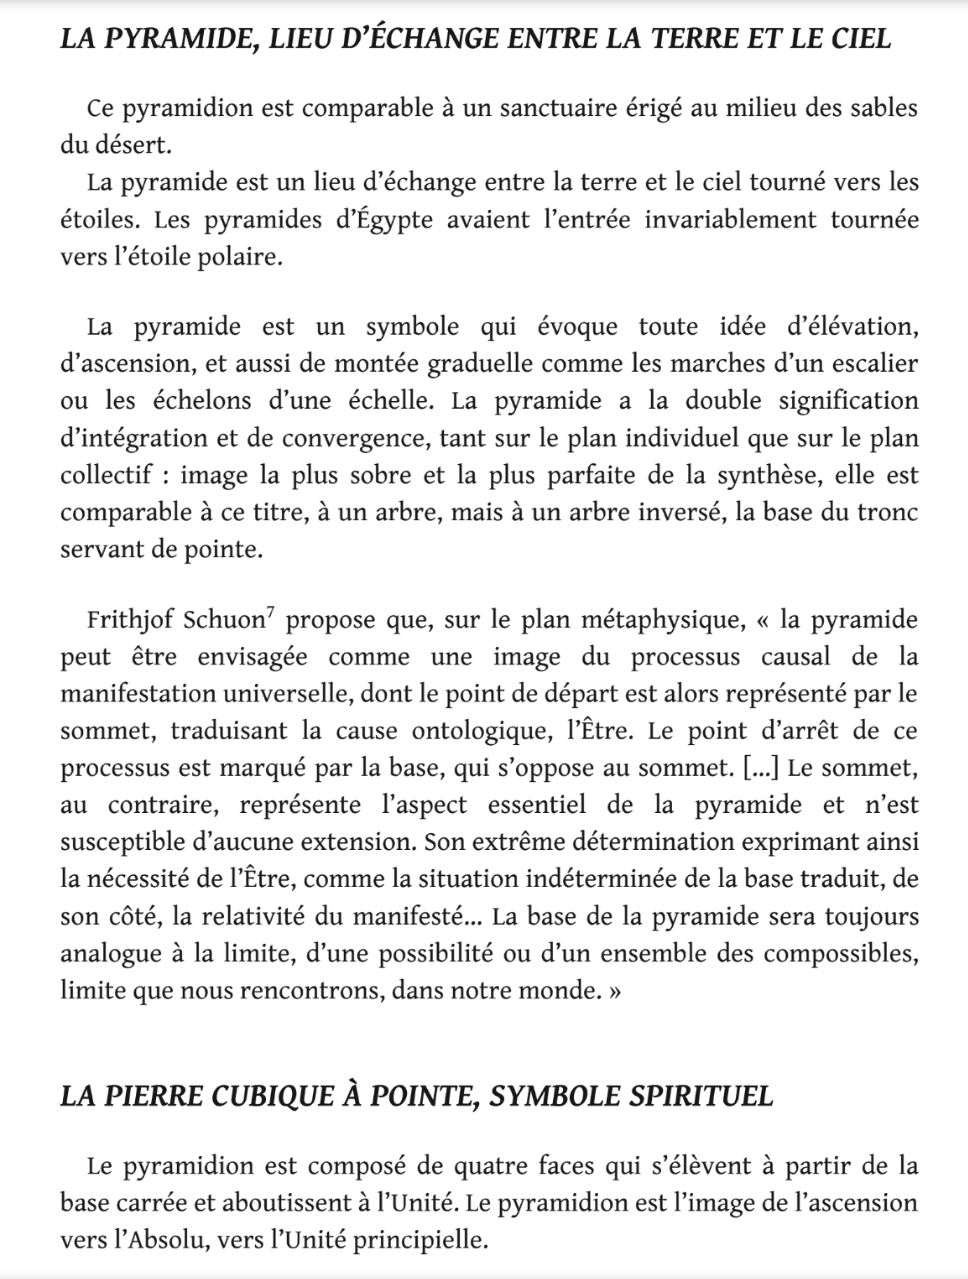 La franc-maçonnerie, la Gnose et le gnosticisme.  - Page 5 Scree429